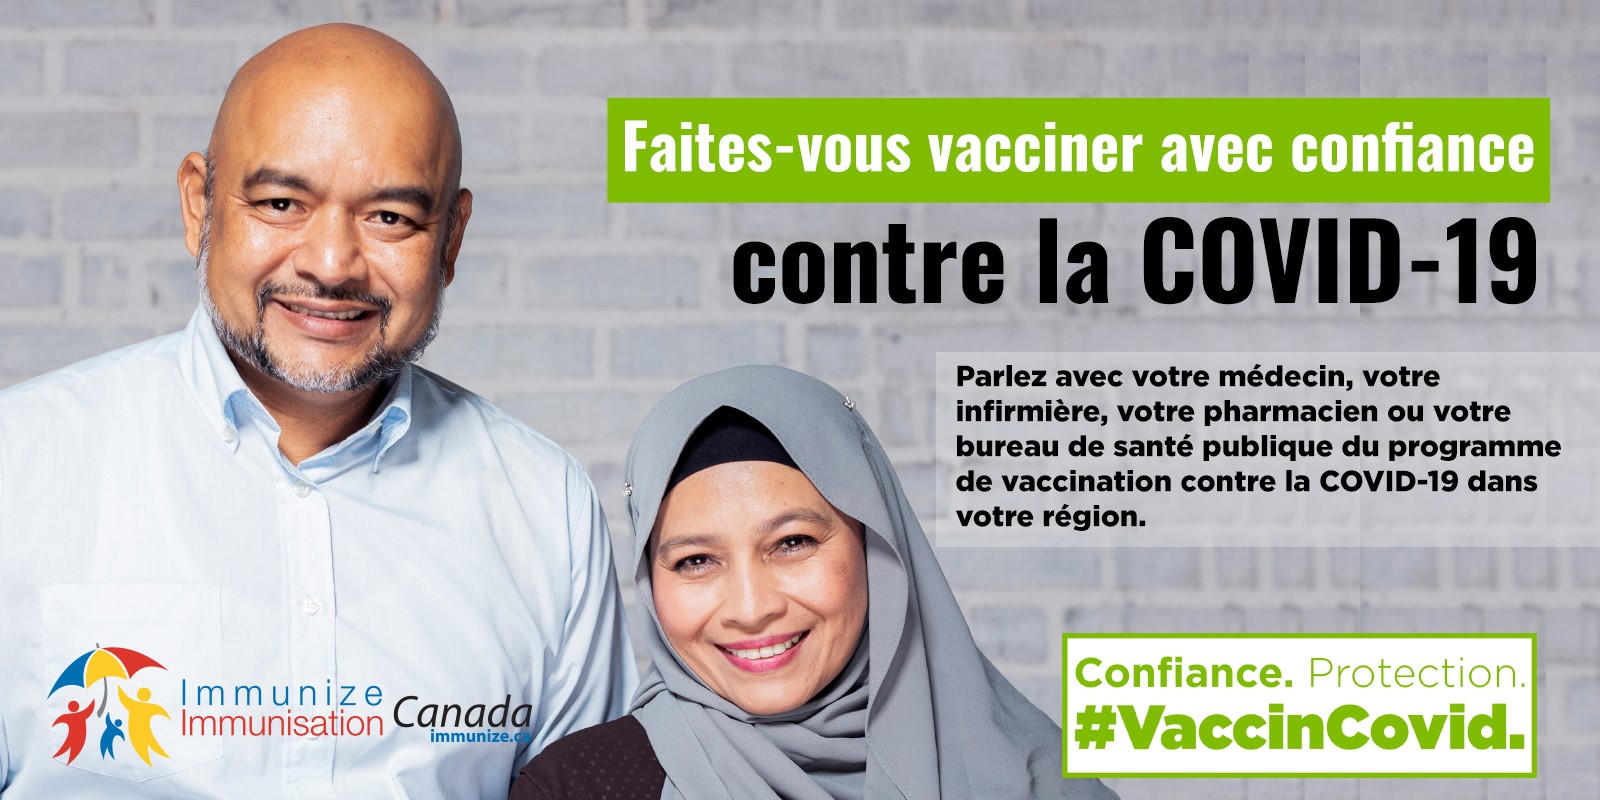 Faites-vous vacciner avec confiance contre la COVID-19 : les adultes 55 et plus